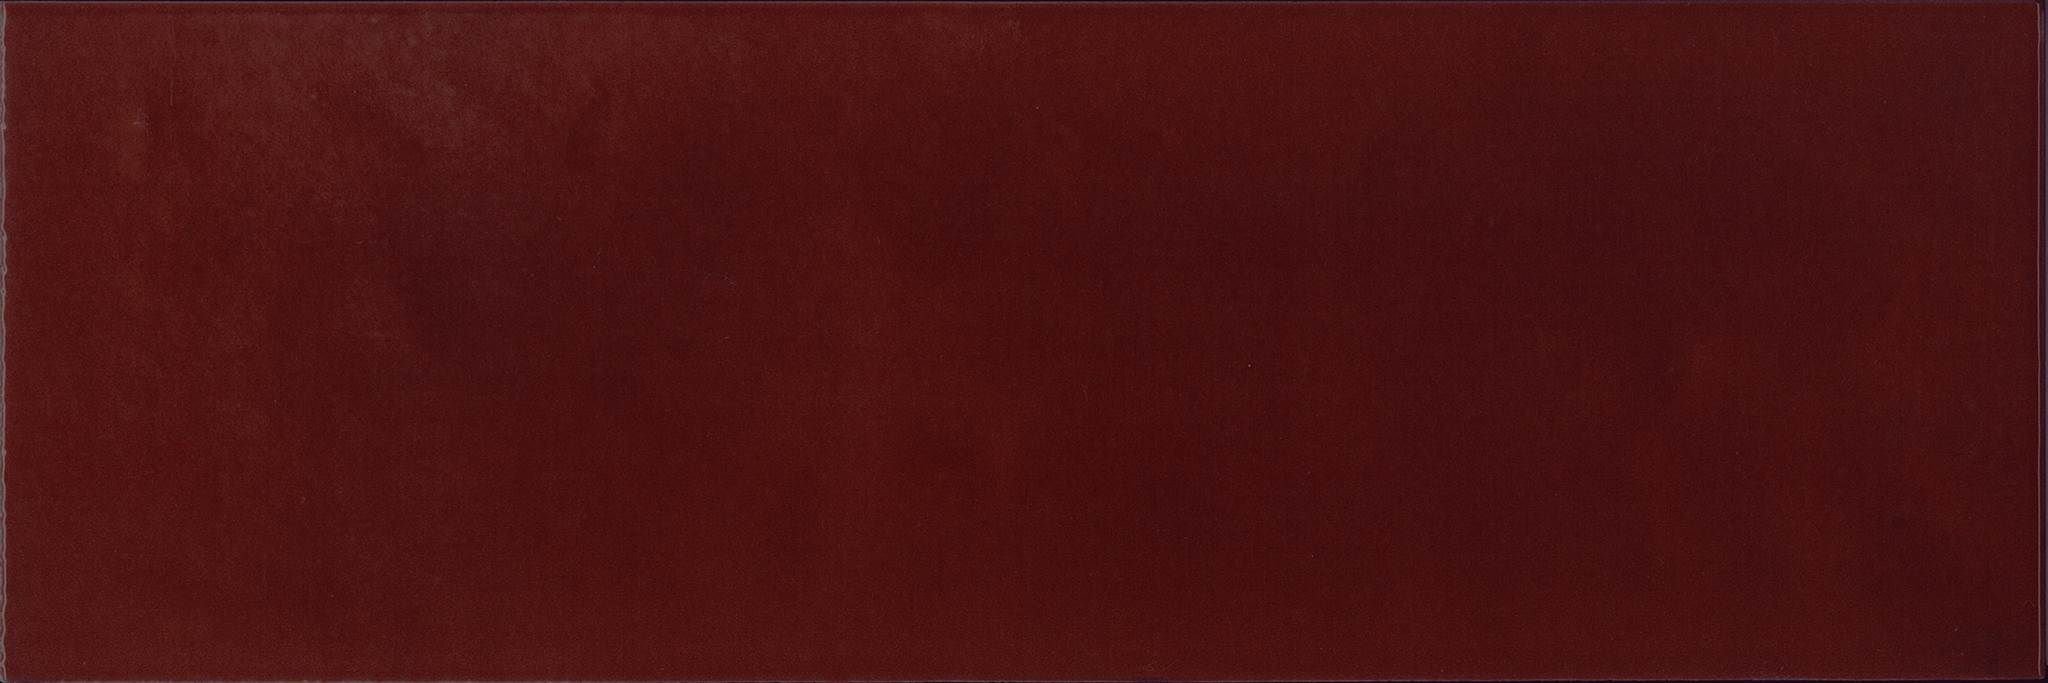 Керамическая плитка Absolut Keramika Granate Milano Brillo, цвет бордовый, поверхность глянцевая, прямоугольник, 100x300